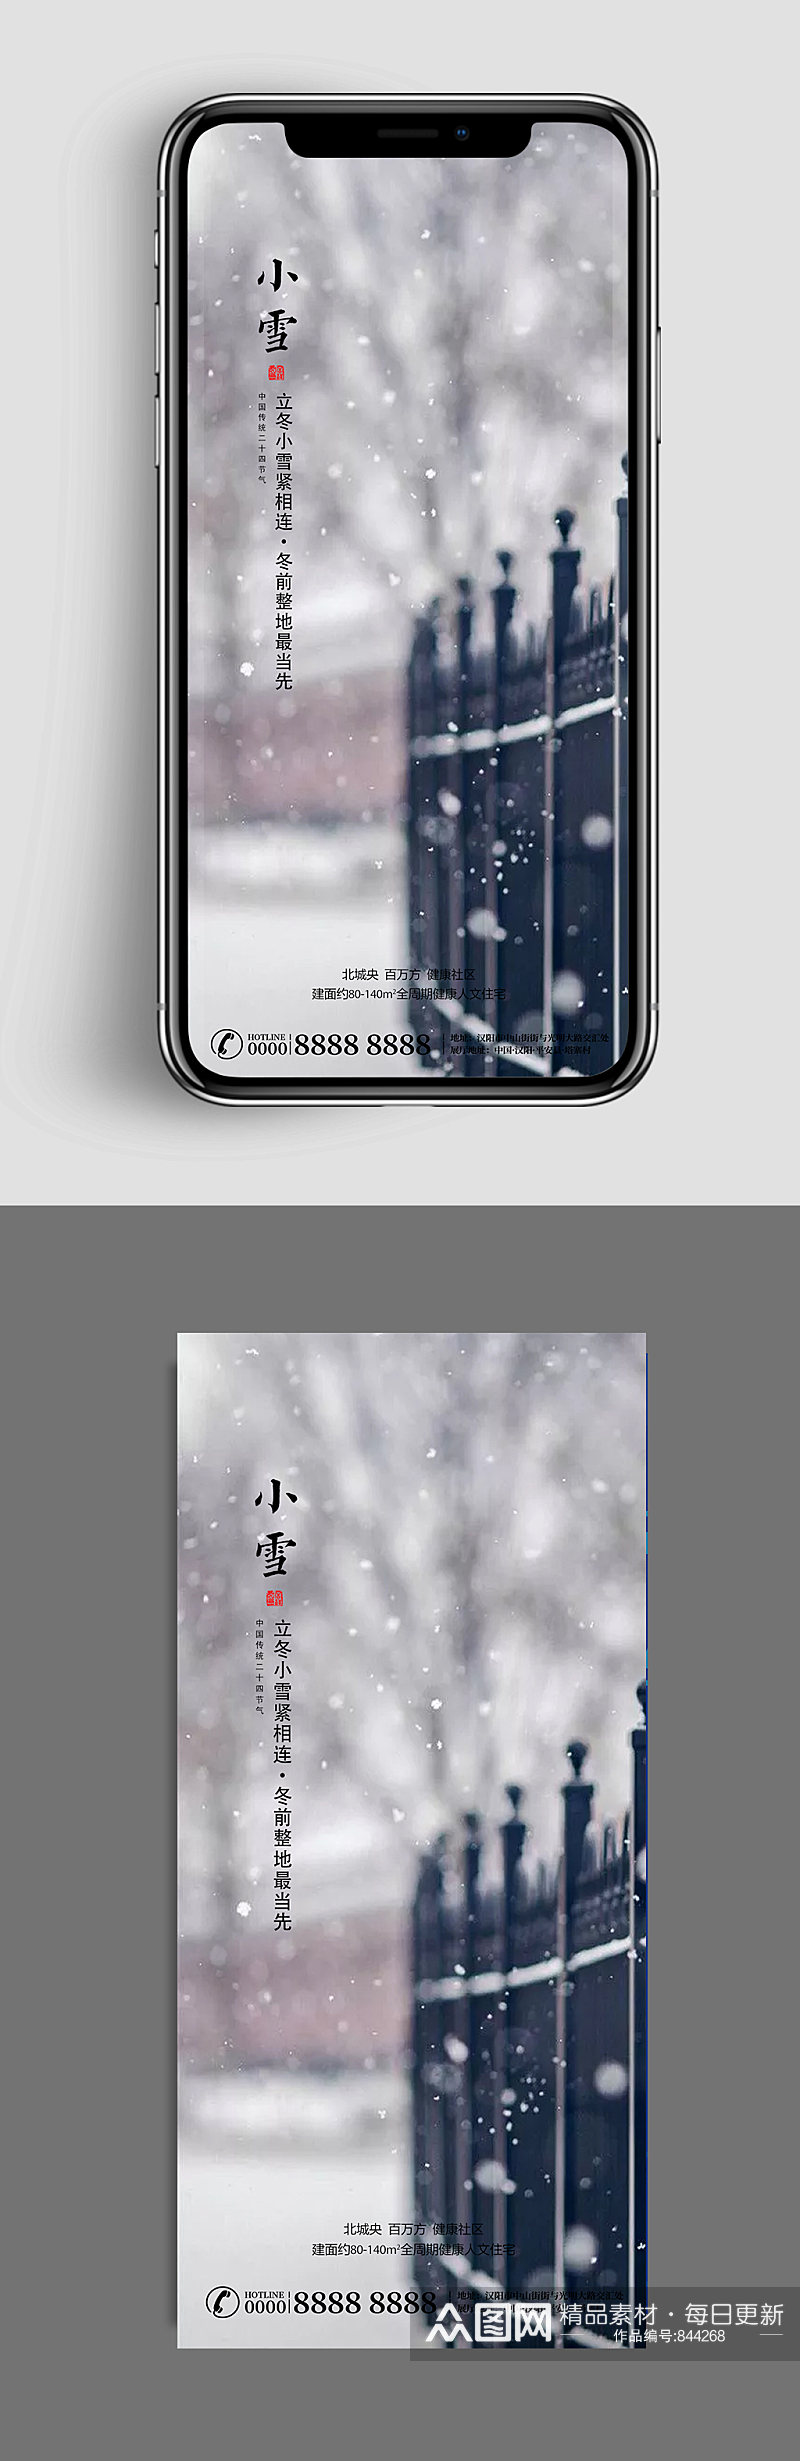 铁栅栏雪景手机海报素材